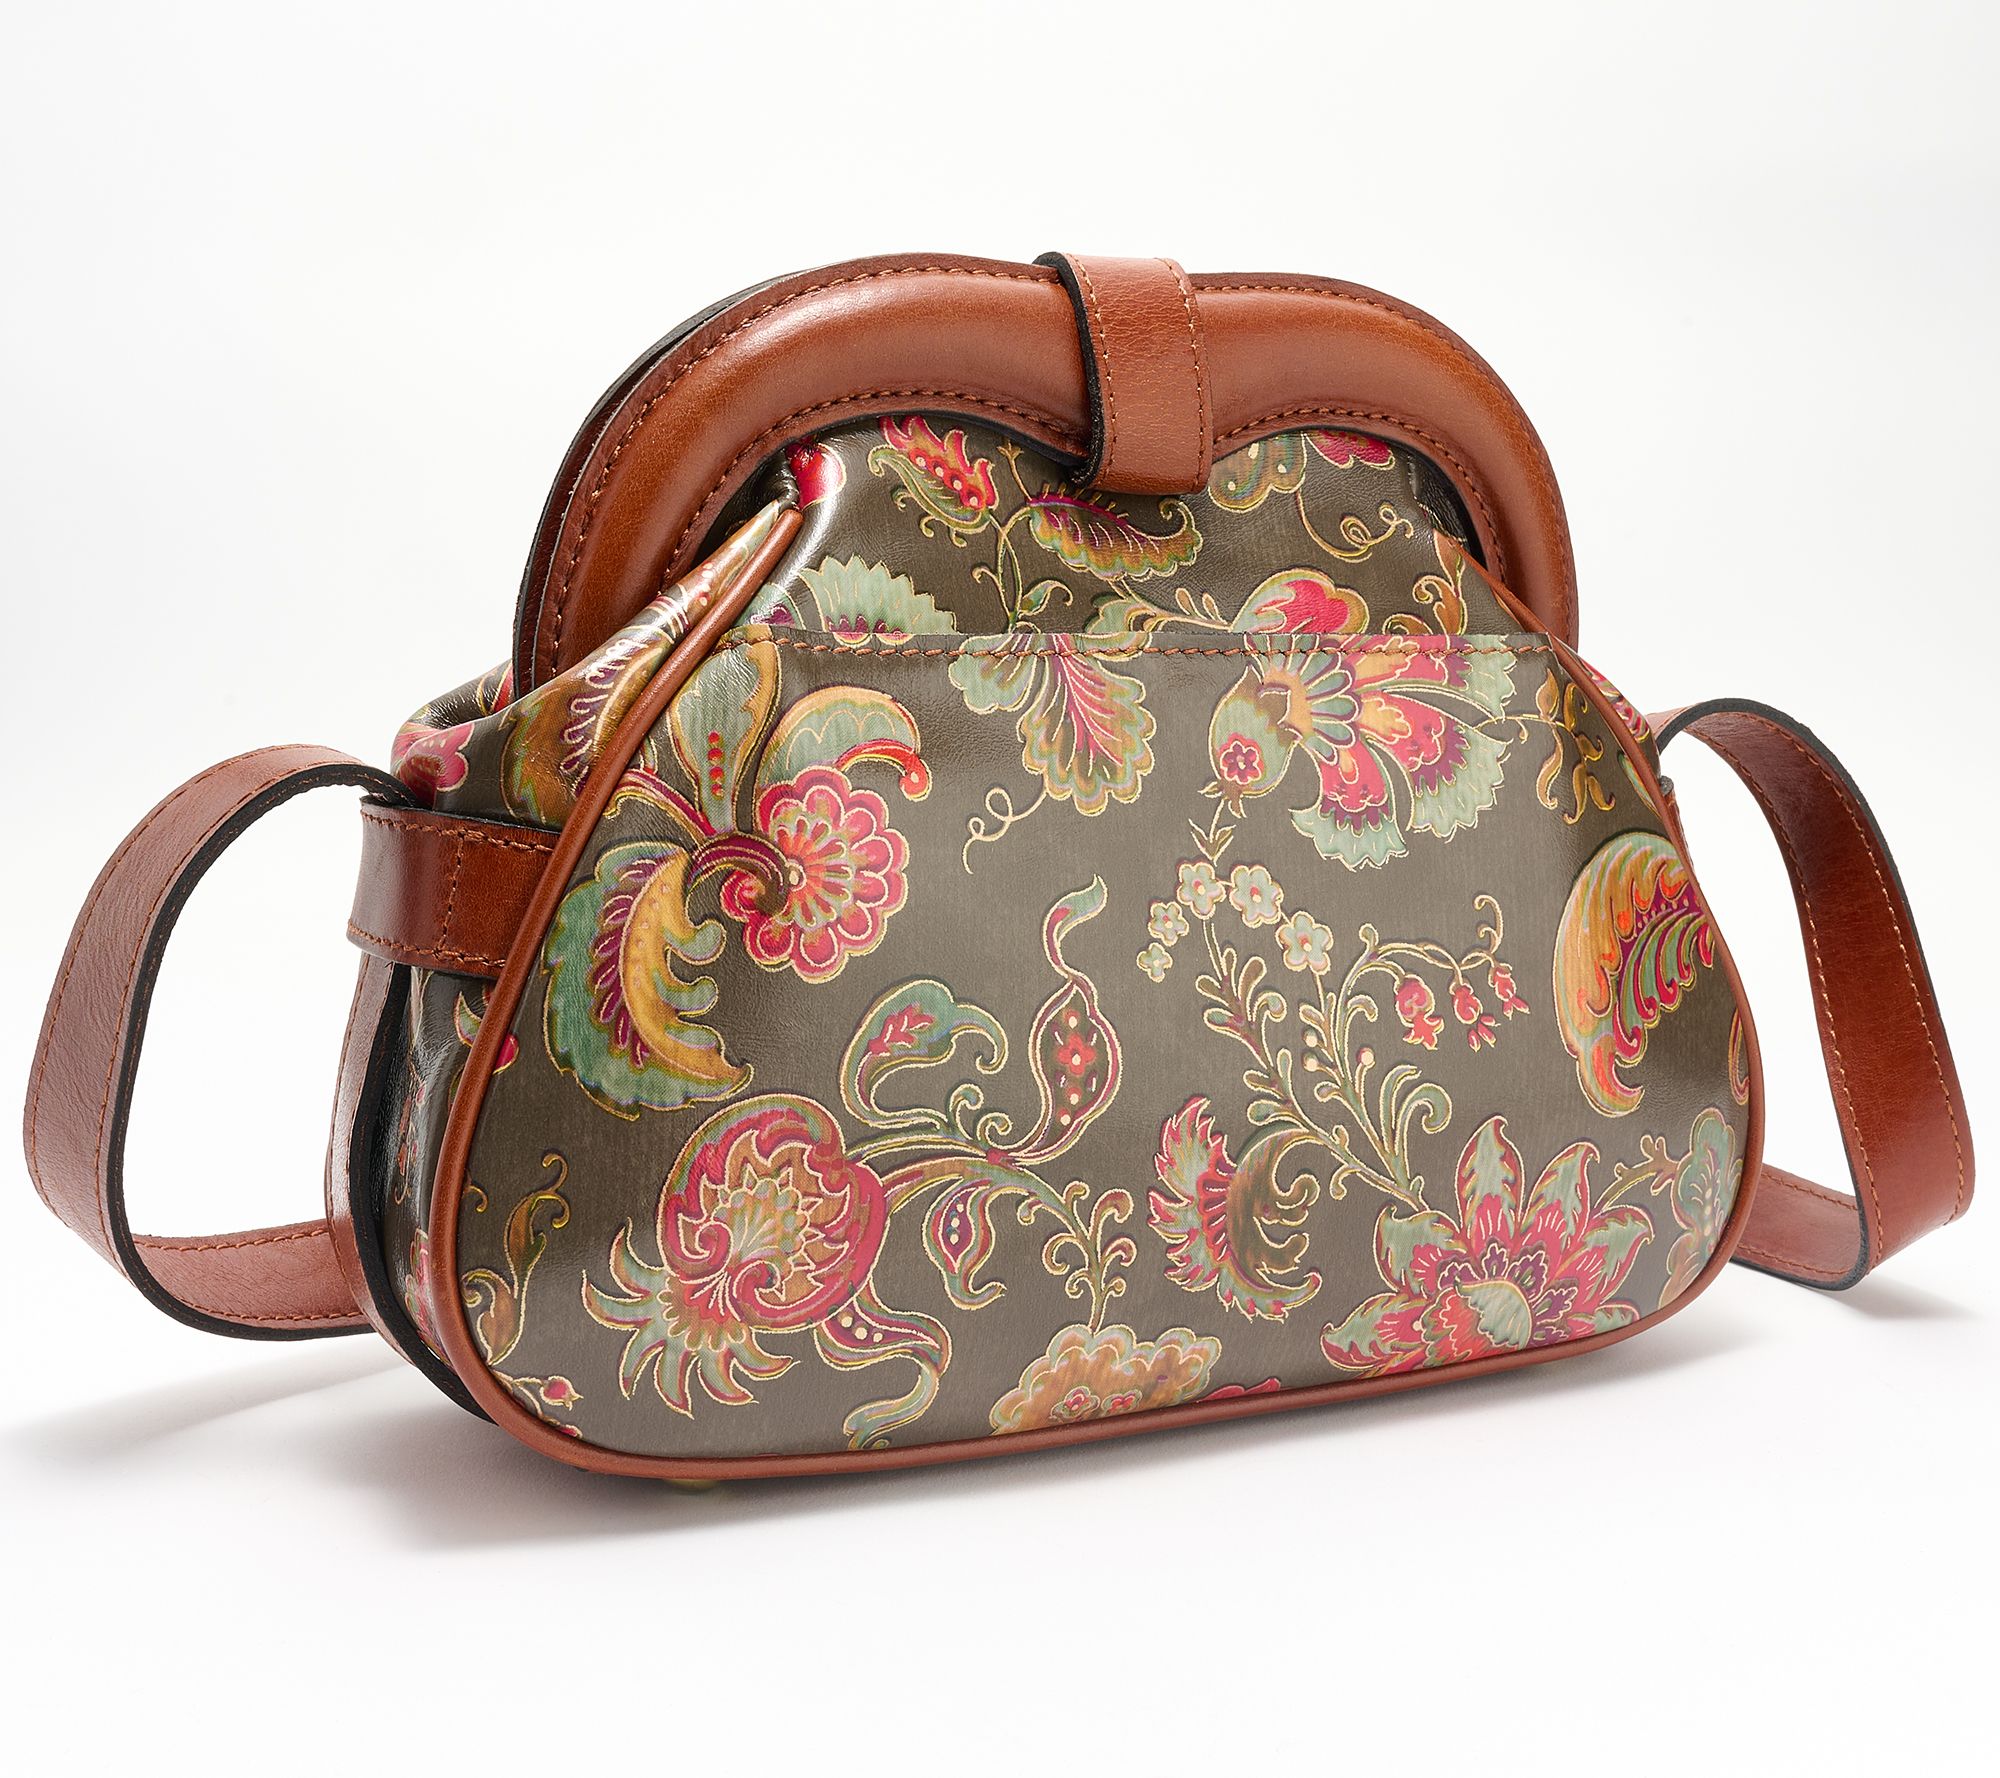 Patricia Nash handbags - Women's accessories